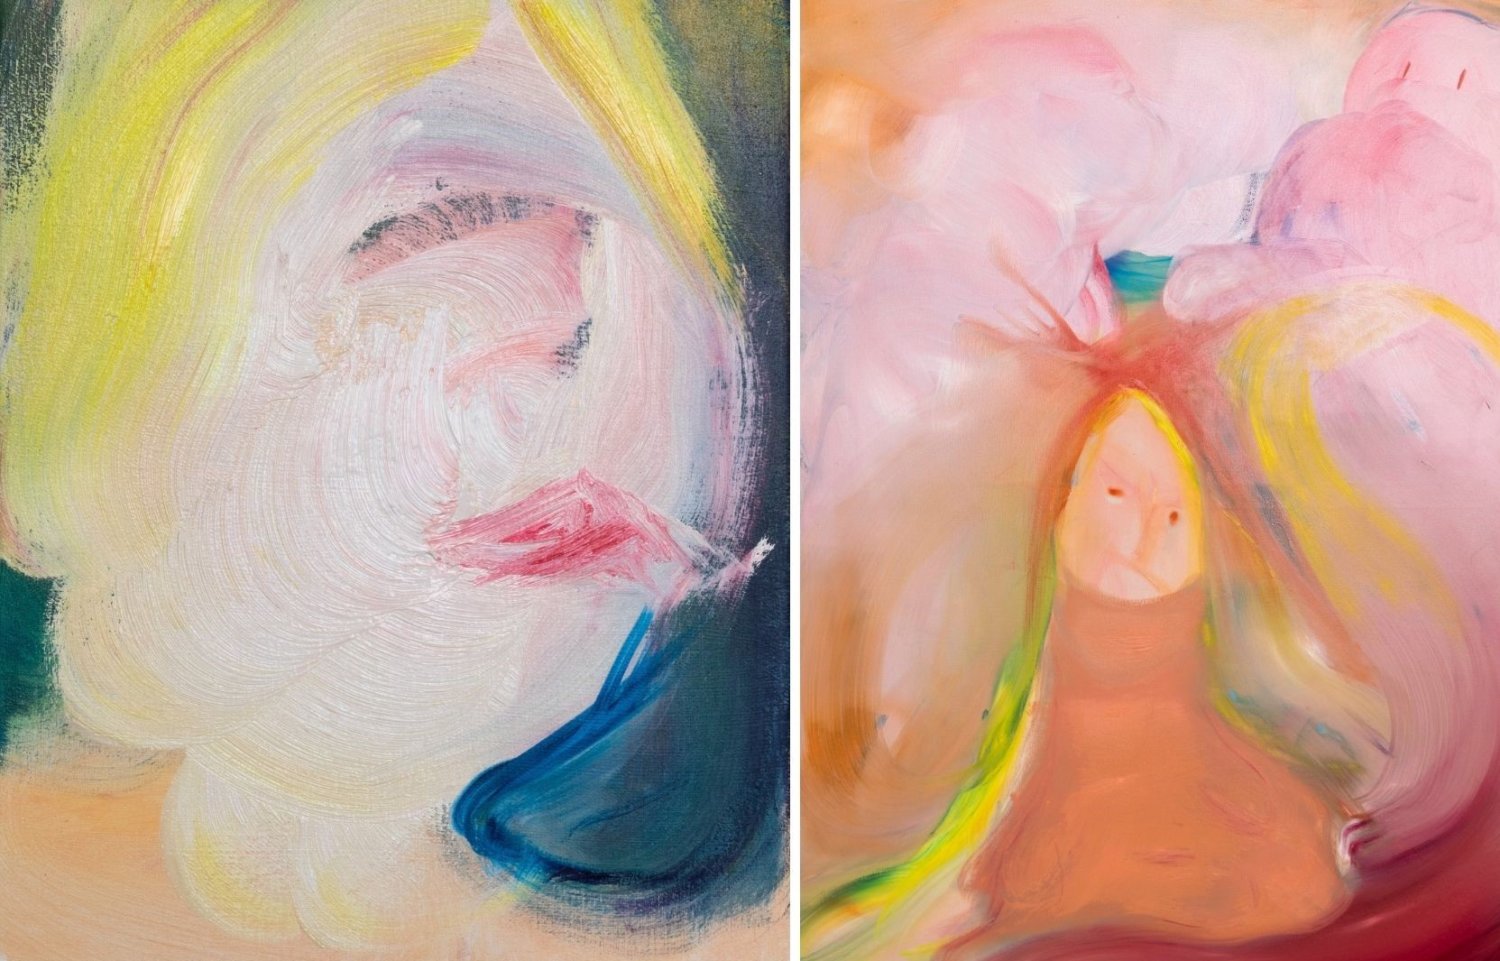 Farbenfrohe Bildkompositionen von Aneta Kajzer mit figürlichen Elementen, wie Gesichtern, Haaren, Augen und Mund